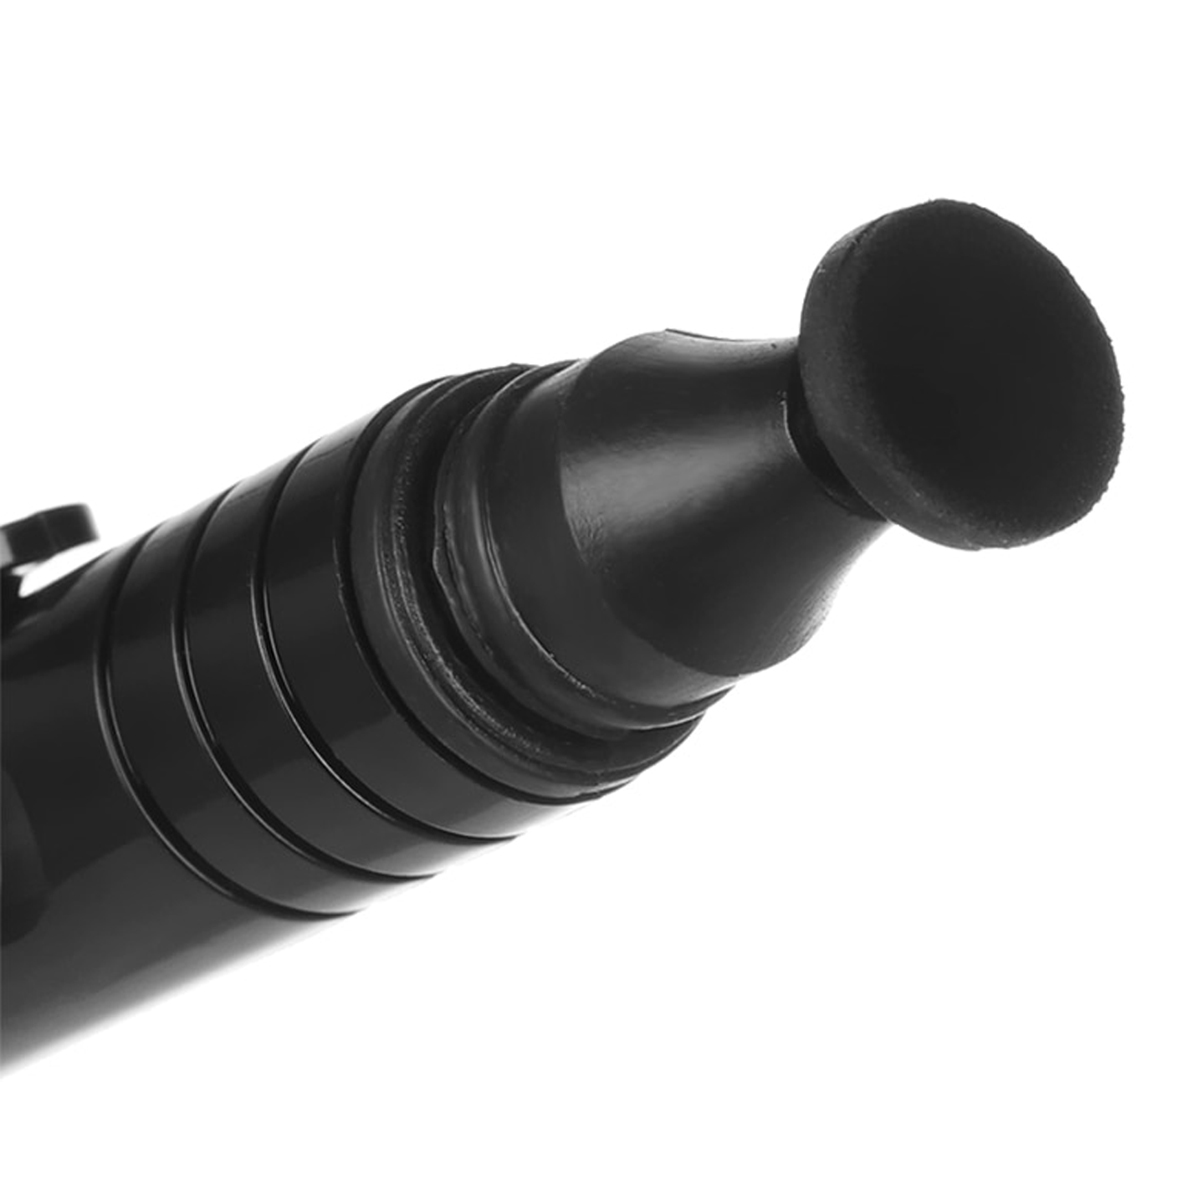 Penna di pulizia BRESSER BR-LP10 per lenti, obiettivi e i filtri